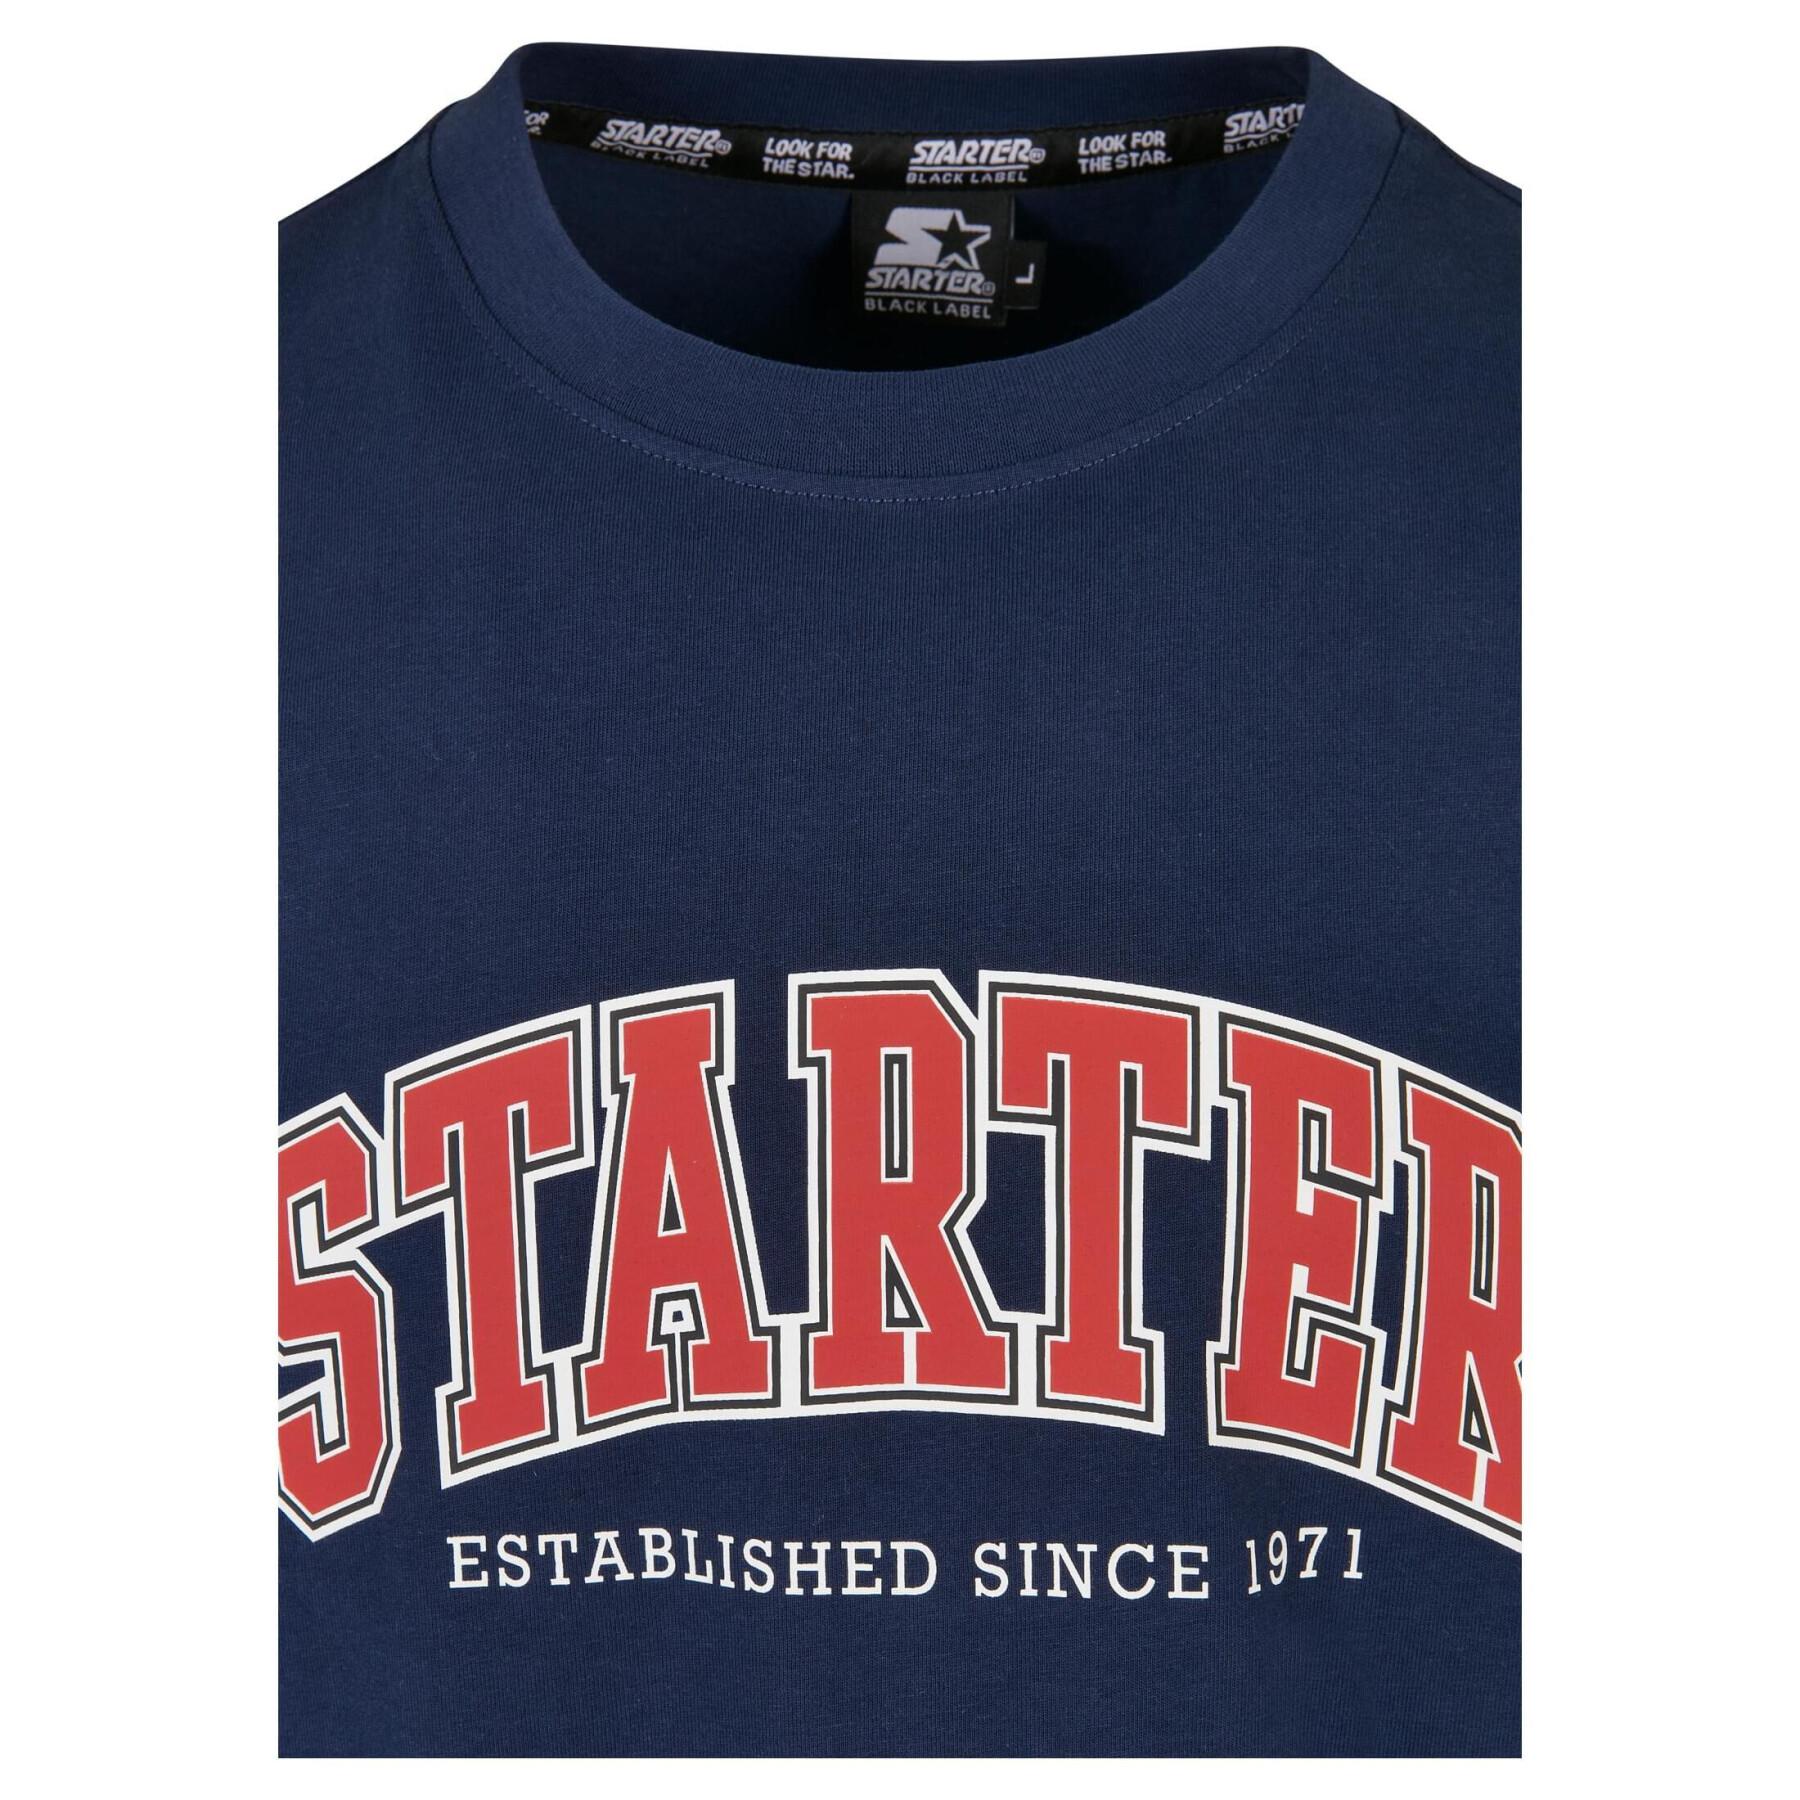 T-shirt Starter College